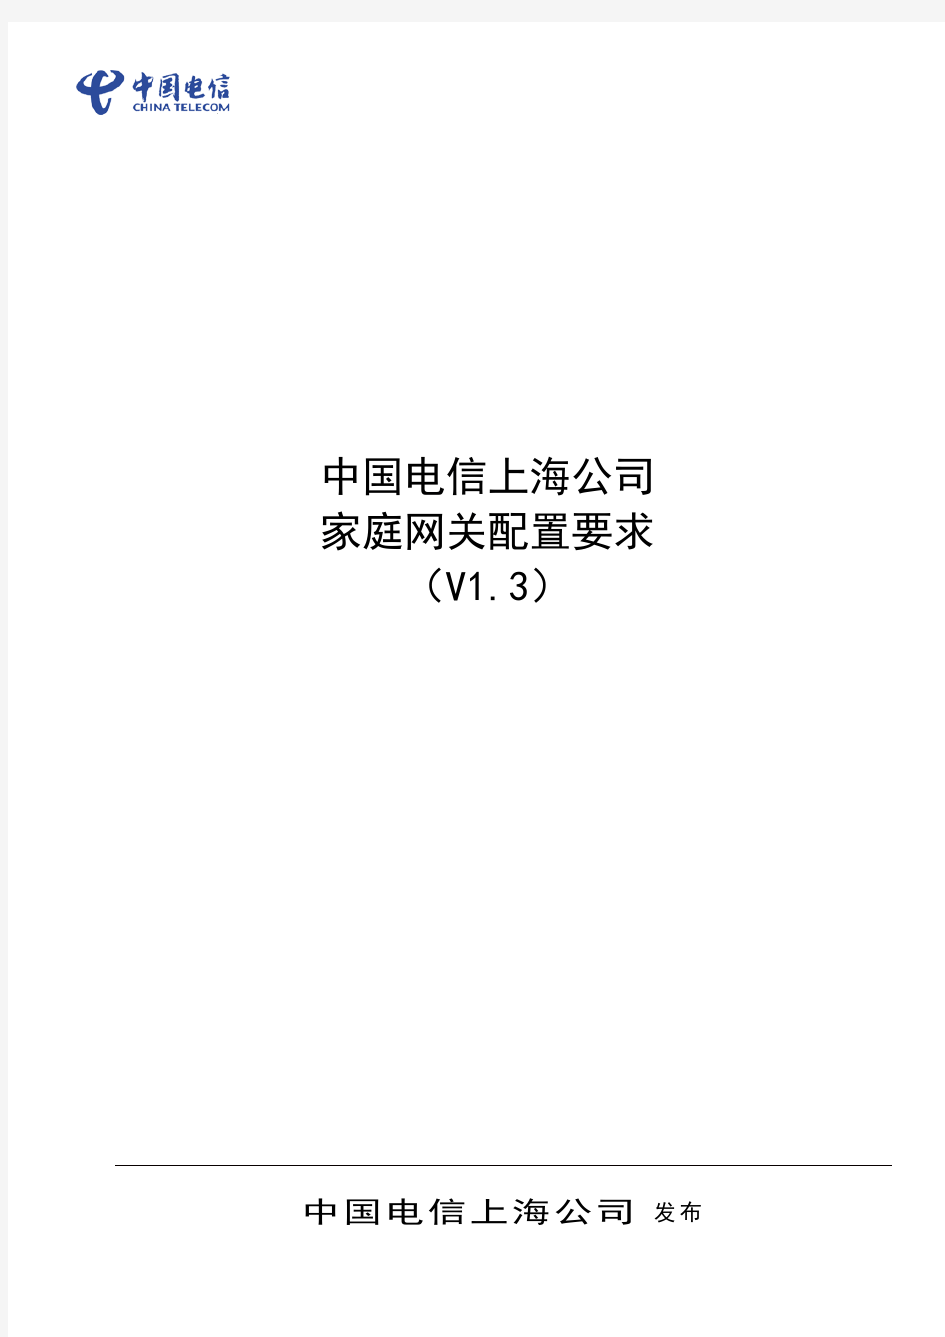 【中兴】中国电信上海电信公司家庭网关配置要求V1.3